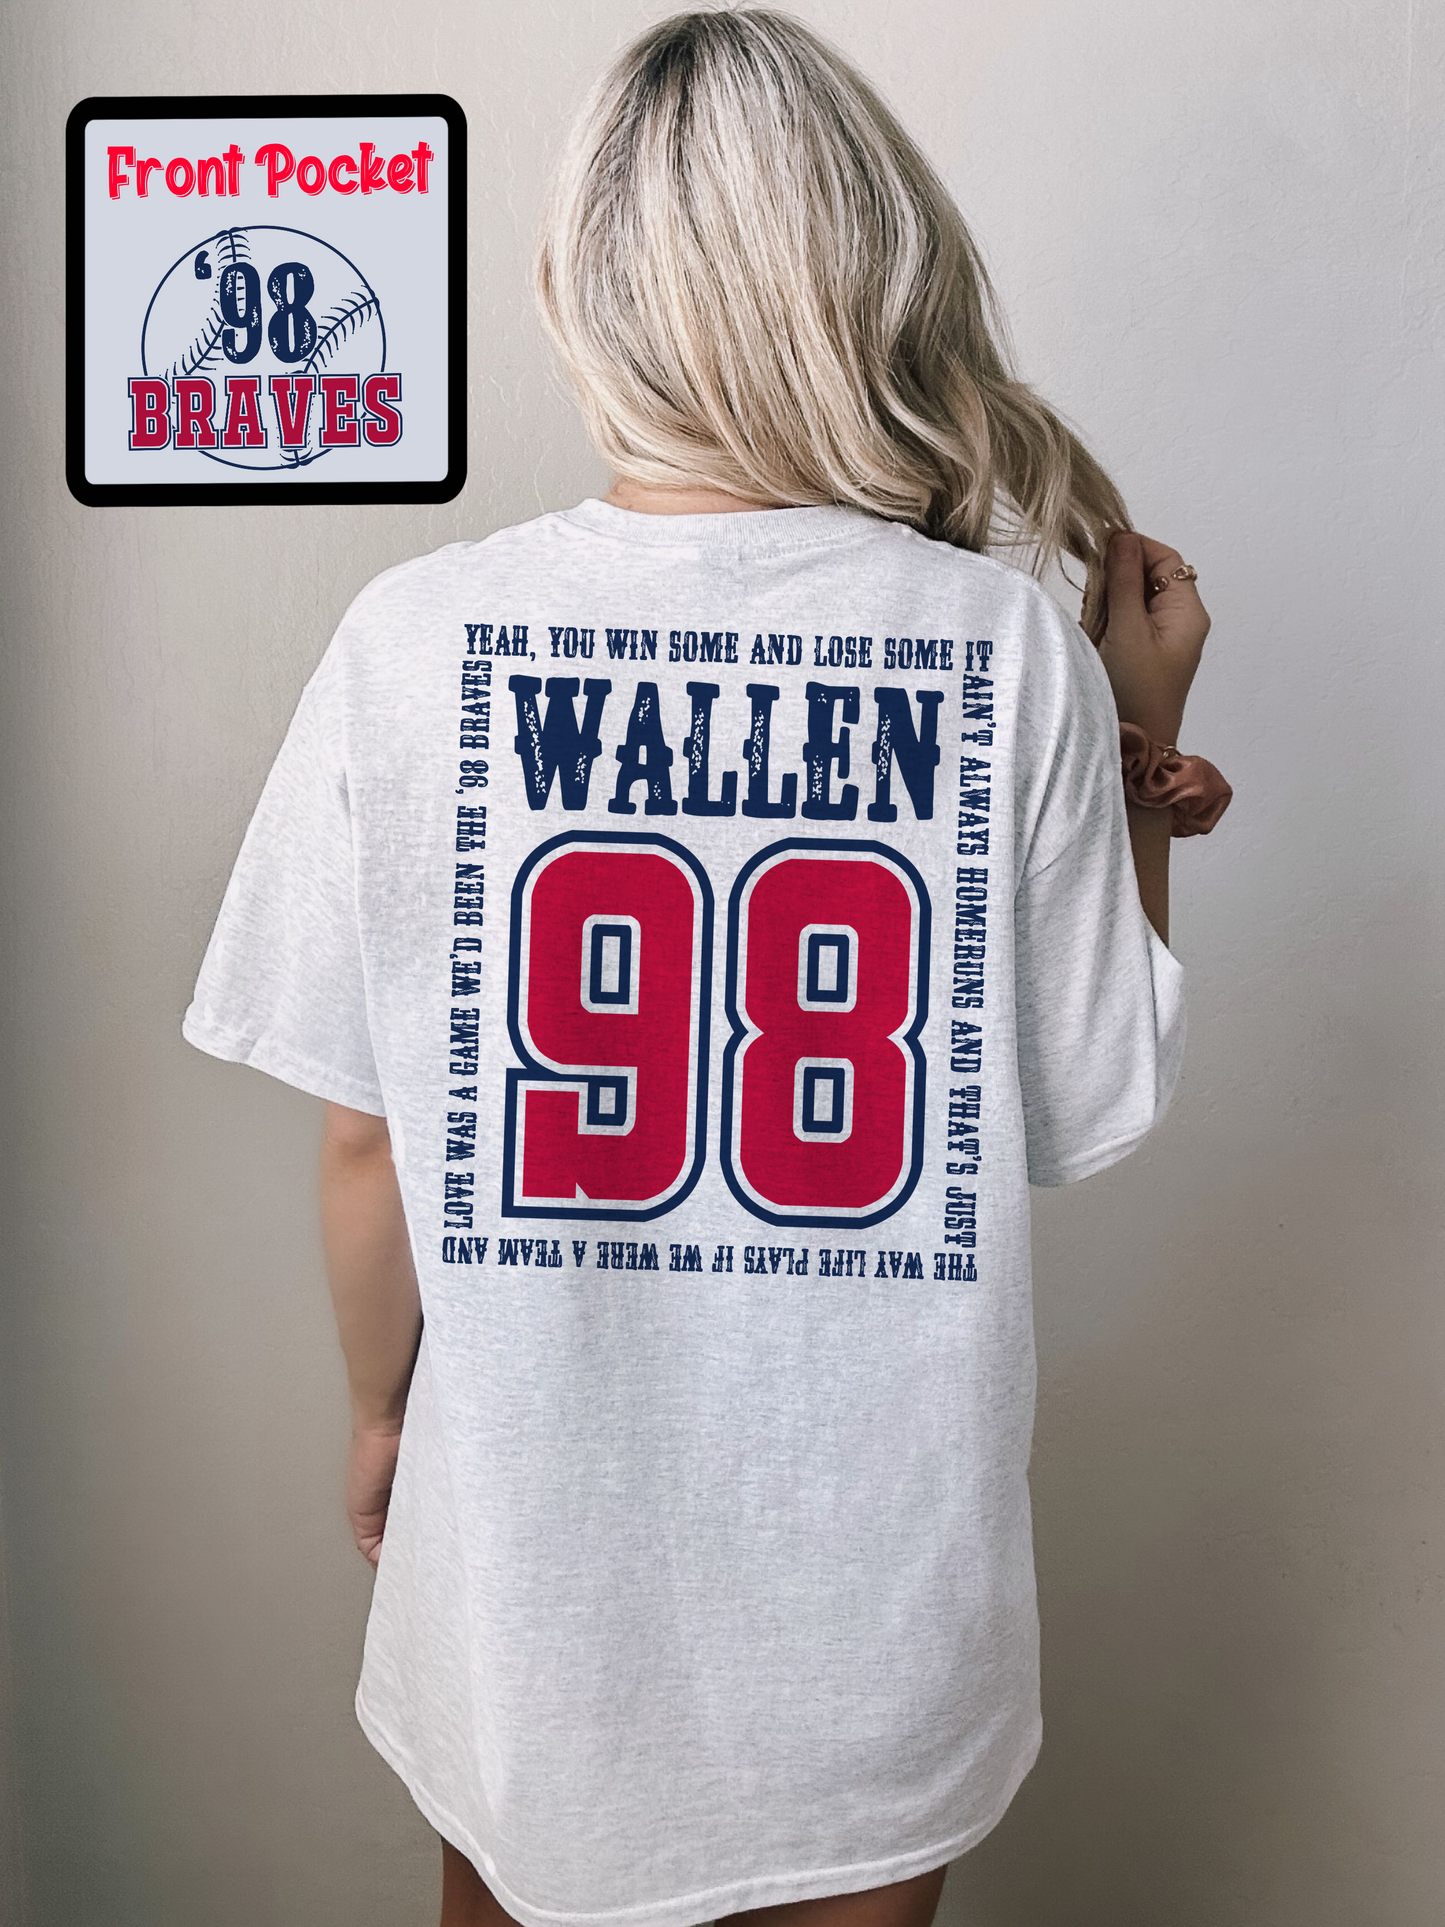 Wallen 98 Braves Shirt